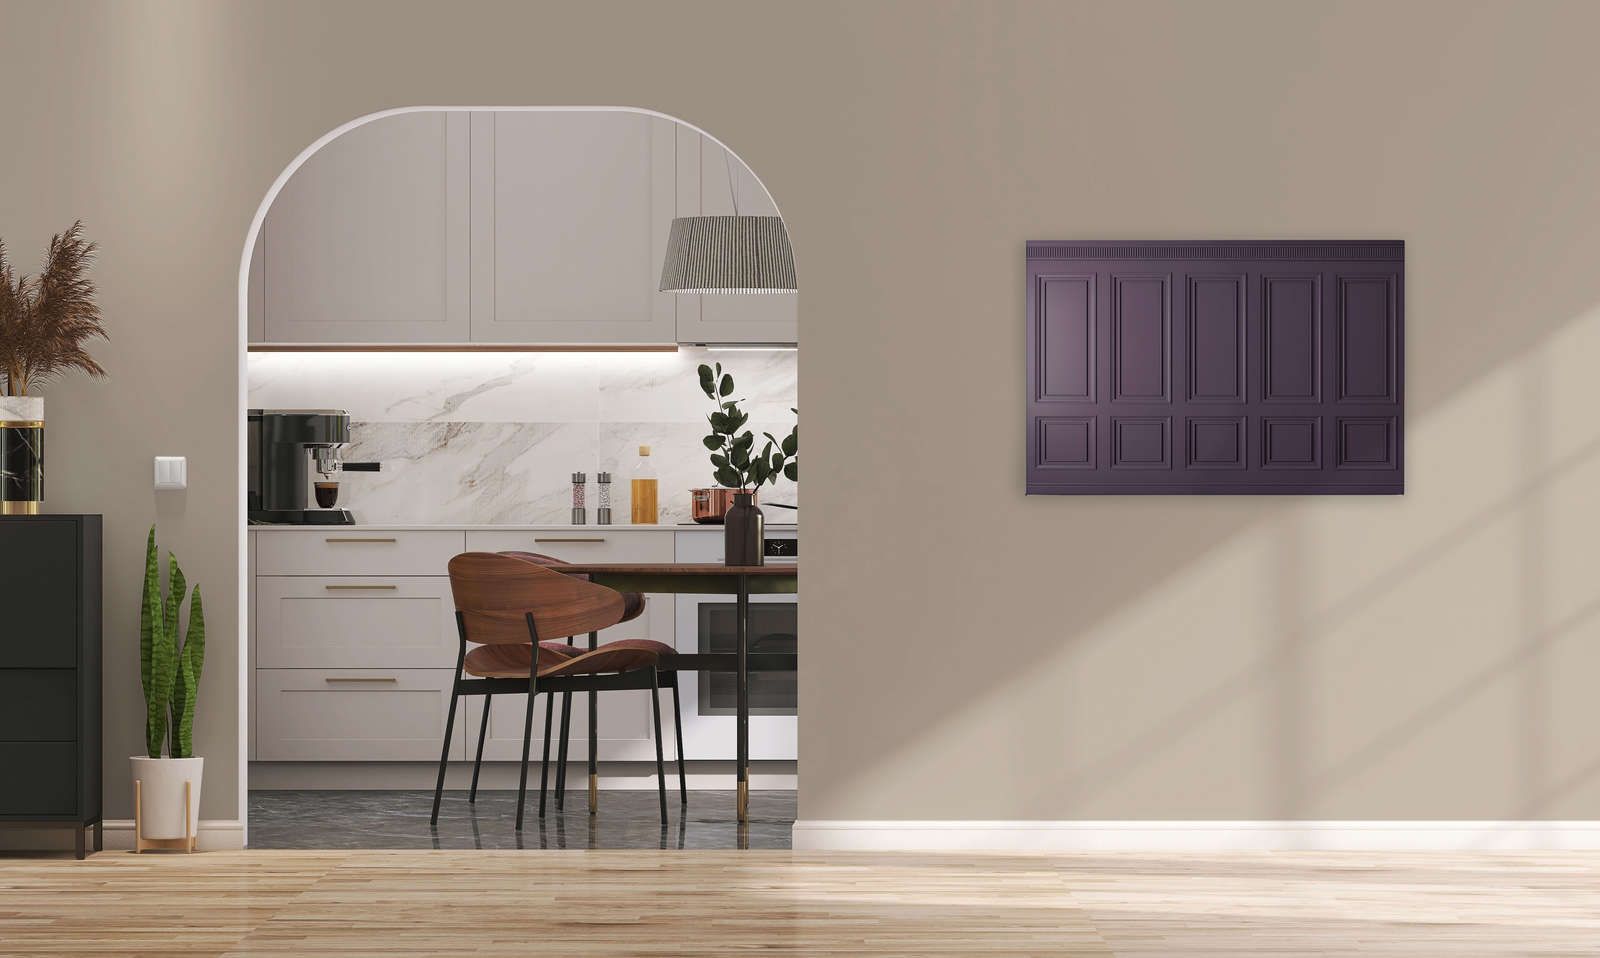             Kensington 3 - 3D toile lambris bois violet foncé, violet - 0,90 m x 0,60 m
        